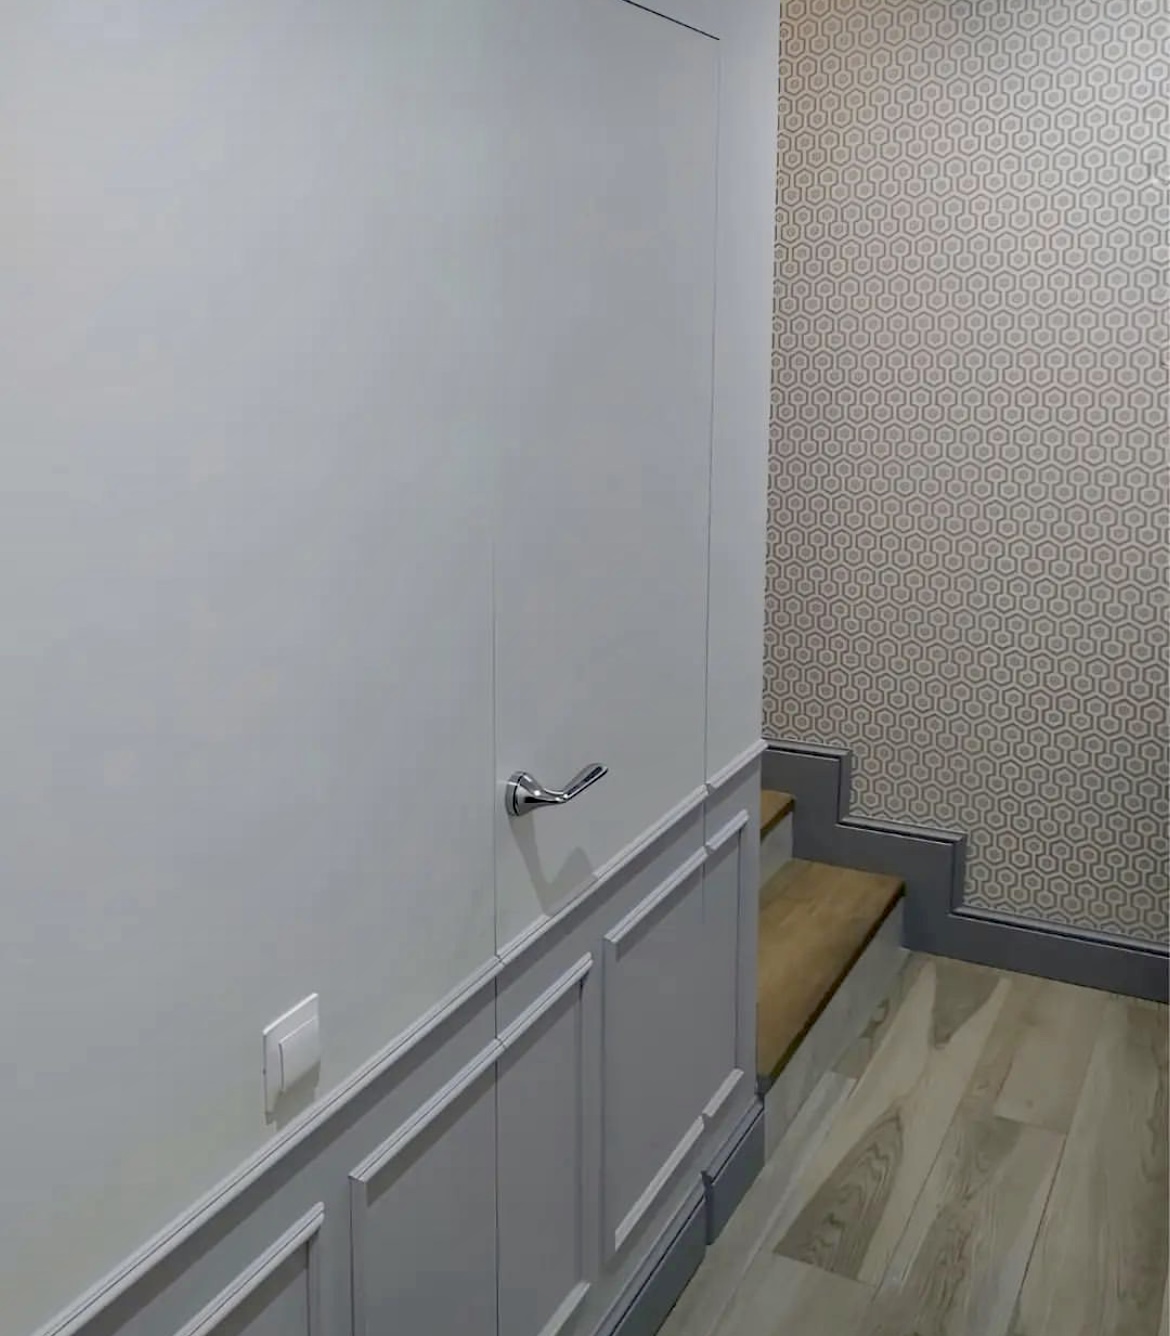 Скрытая грунтованная дверь под покраску невидимка в интерьере коридора 